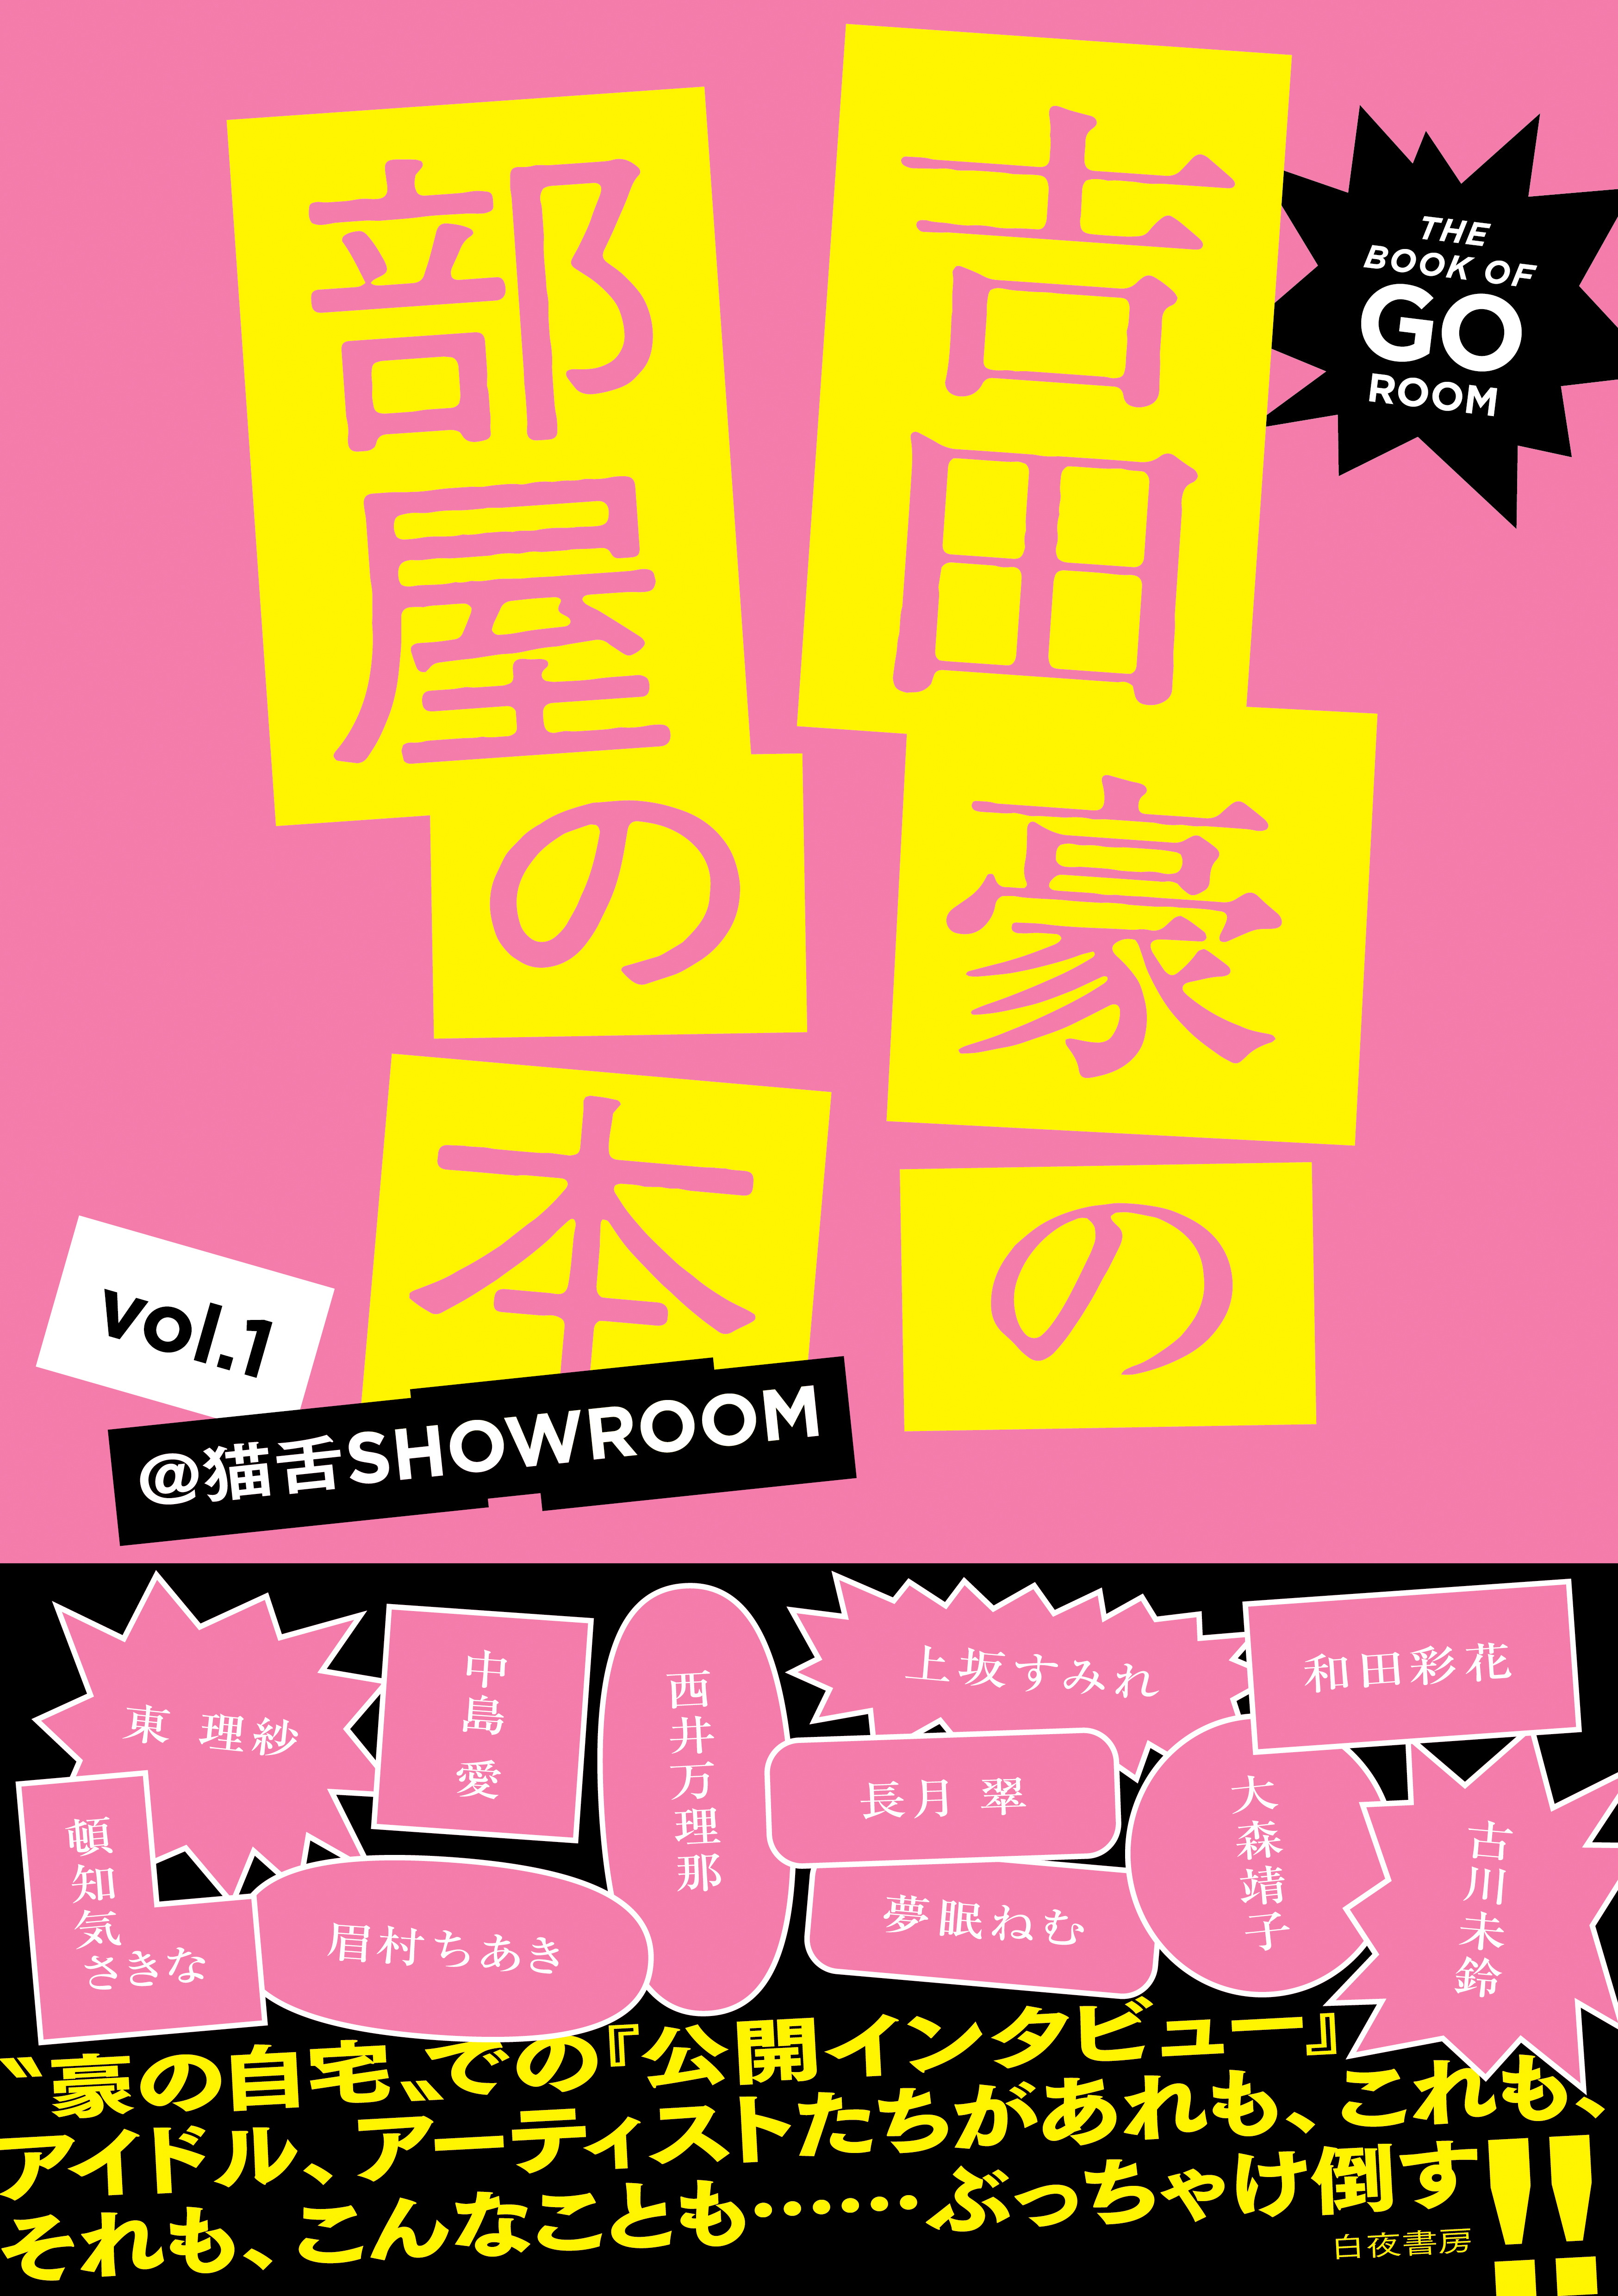 吉田豪の部屋の本 vol.1 -@猫舌SHOWROOM- - 吉田豪 - 漫画・無料試し